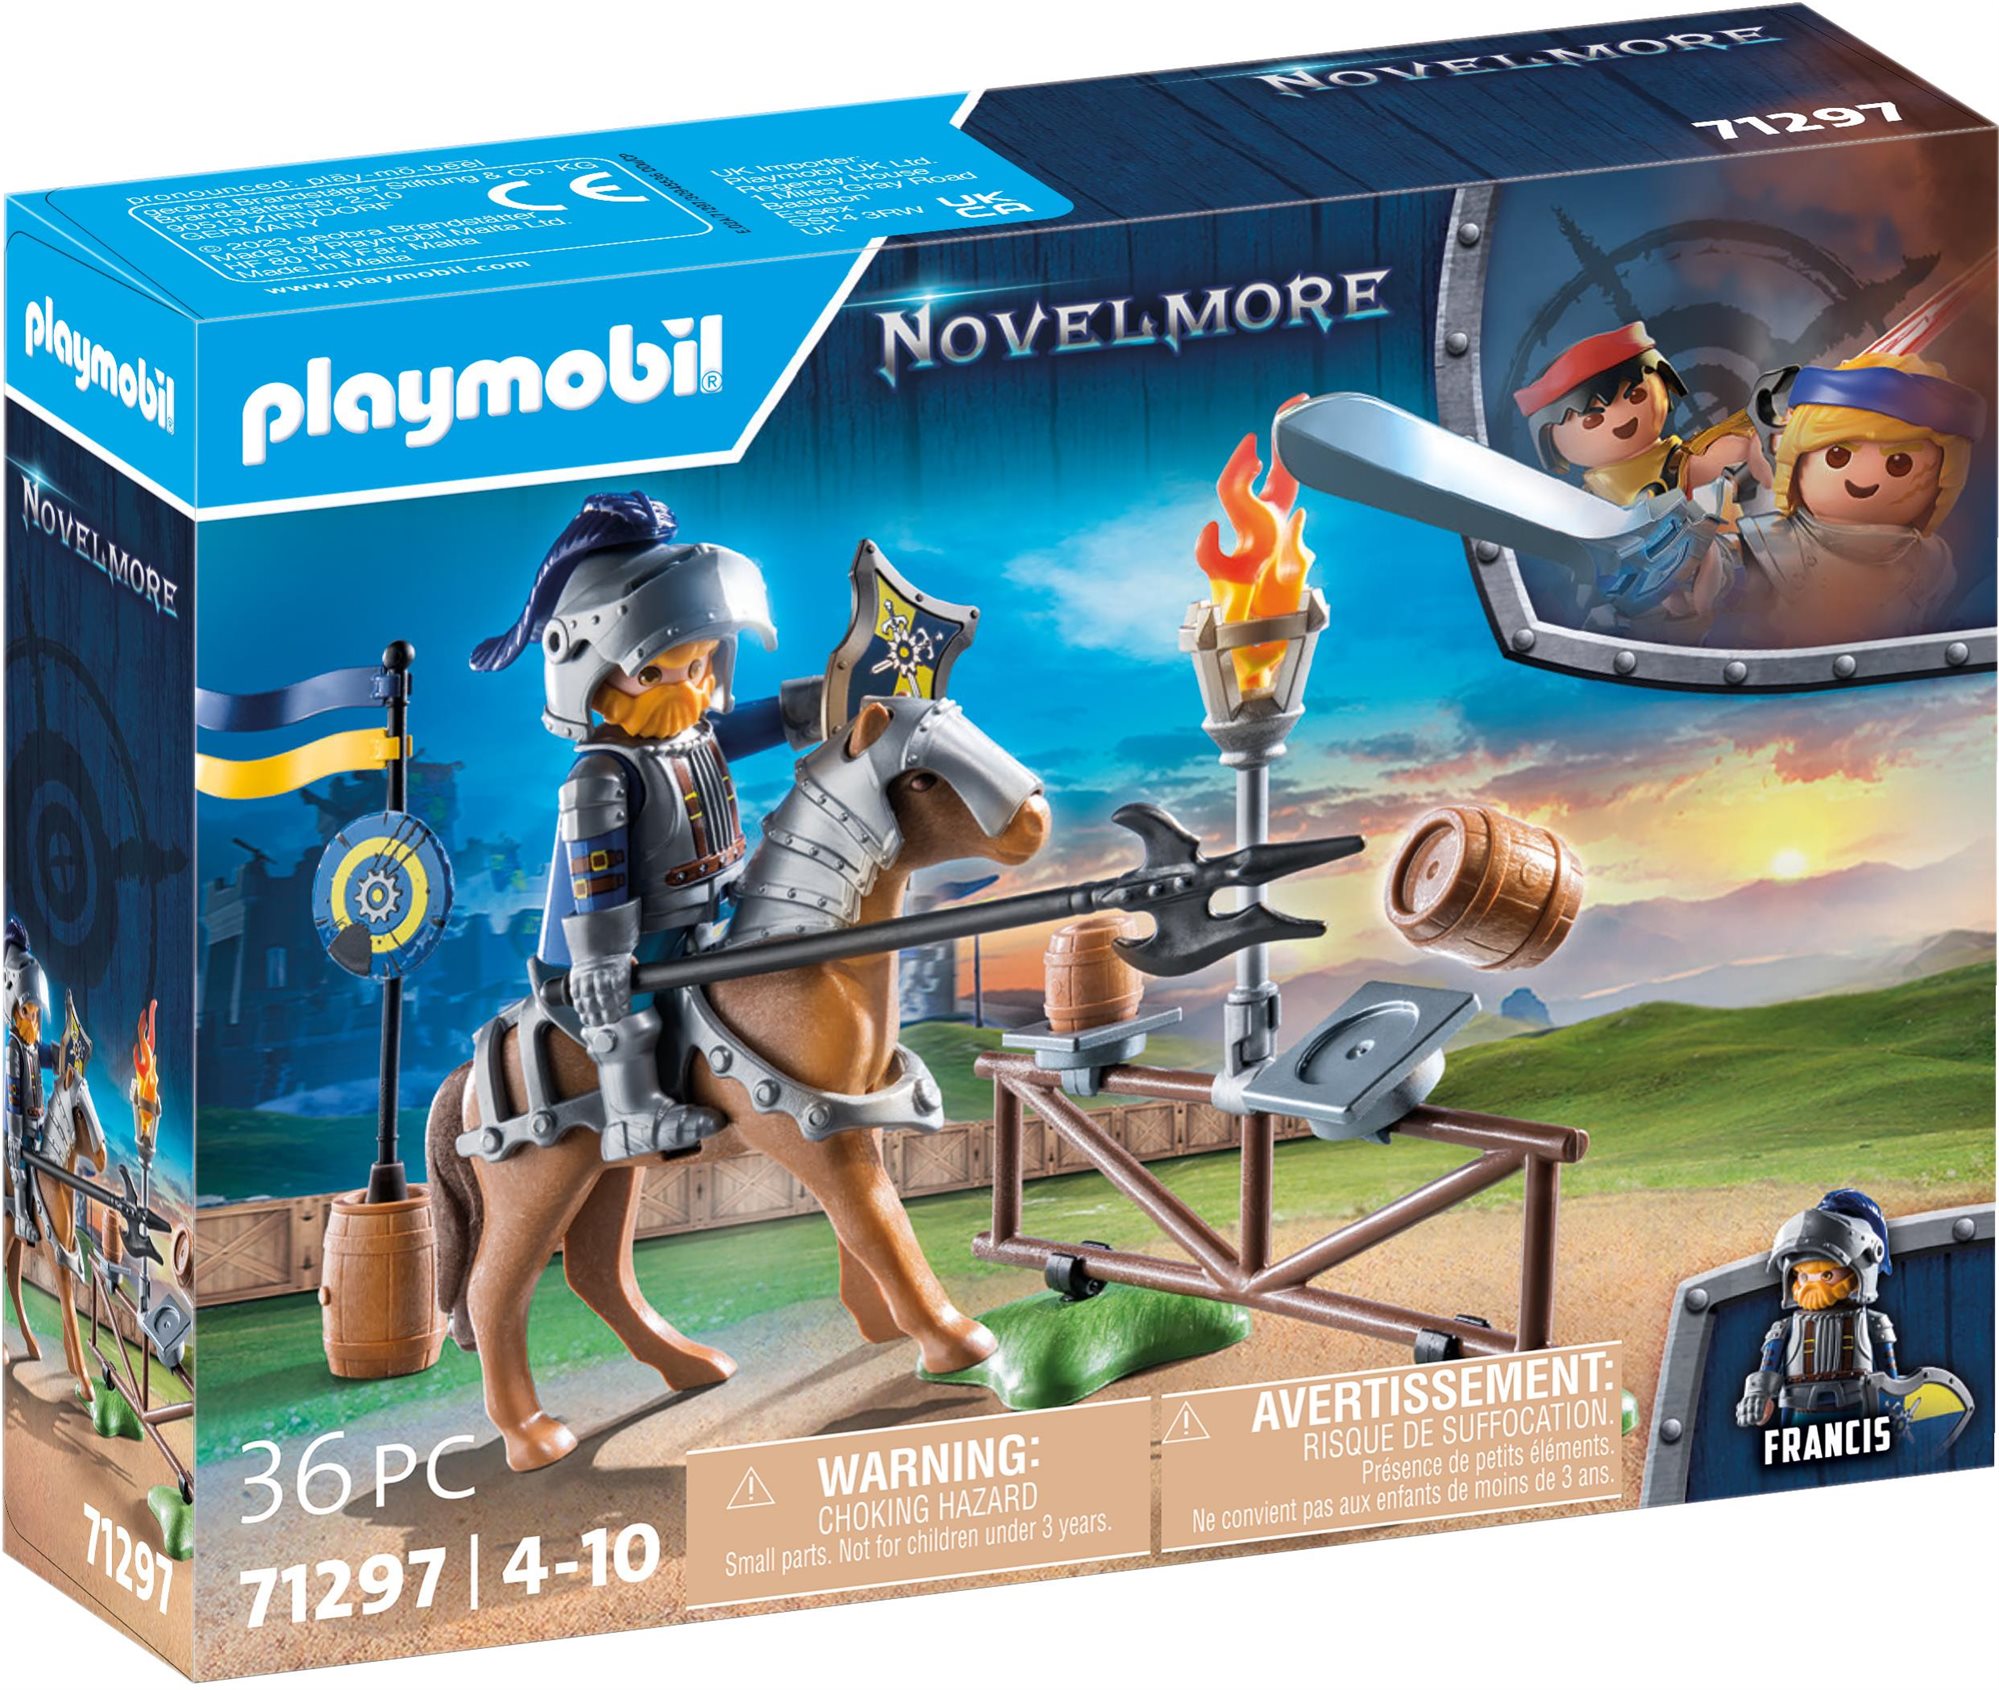 Építőjáték Playmobil Novelmore - Gyakorló pálya 71297